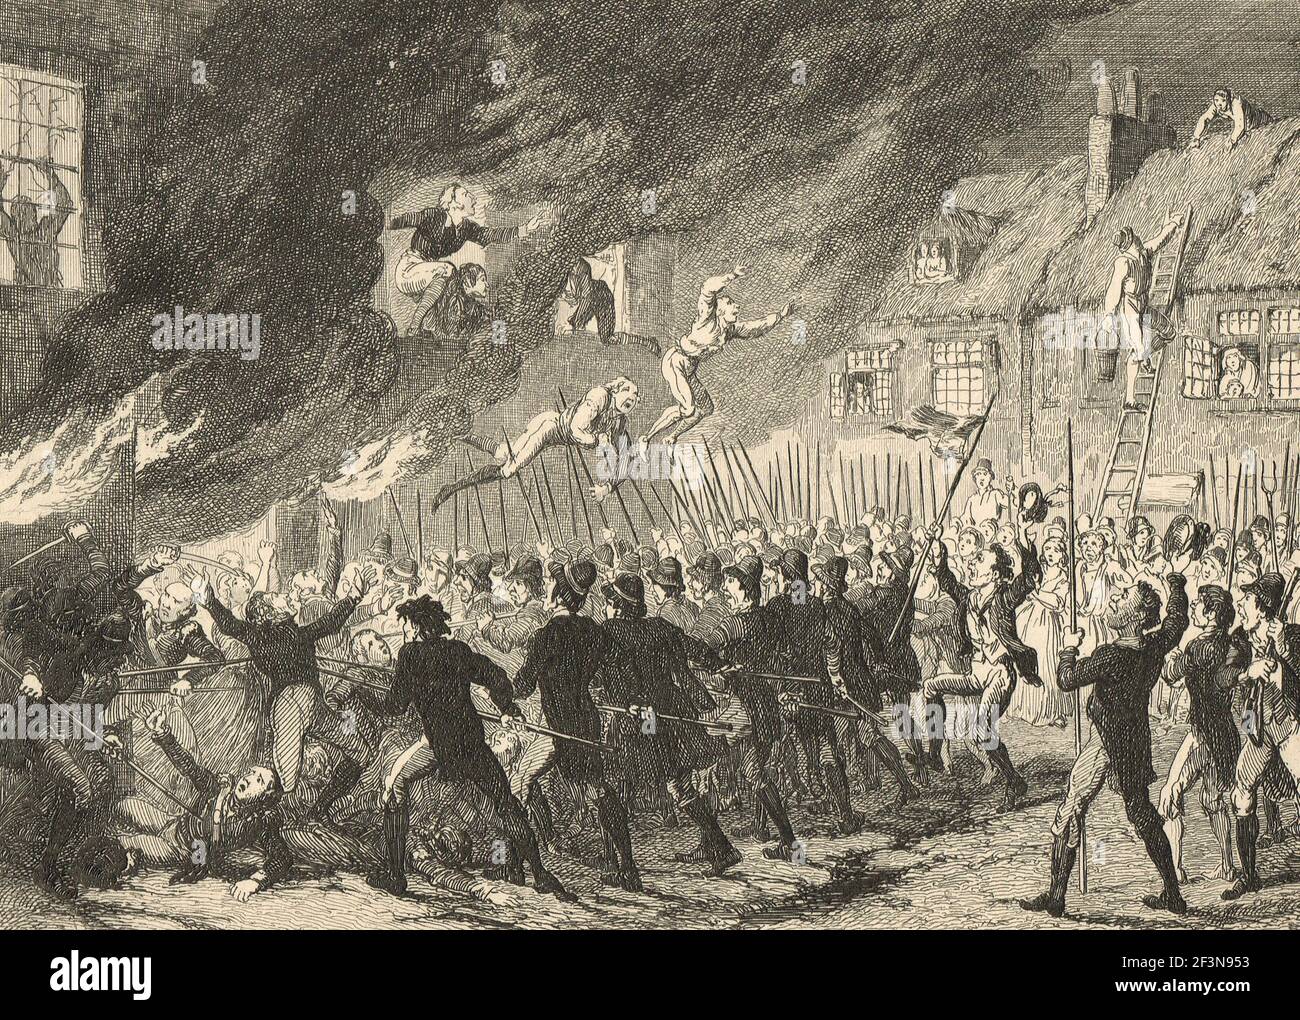 La bataille de la prospérité, comté de Kildare, 24 mai 1798, pendant la rébellion irlandaise de 1798 Banque D'Images